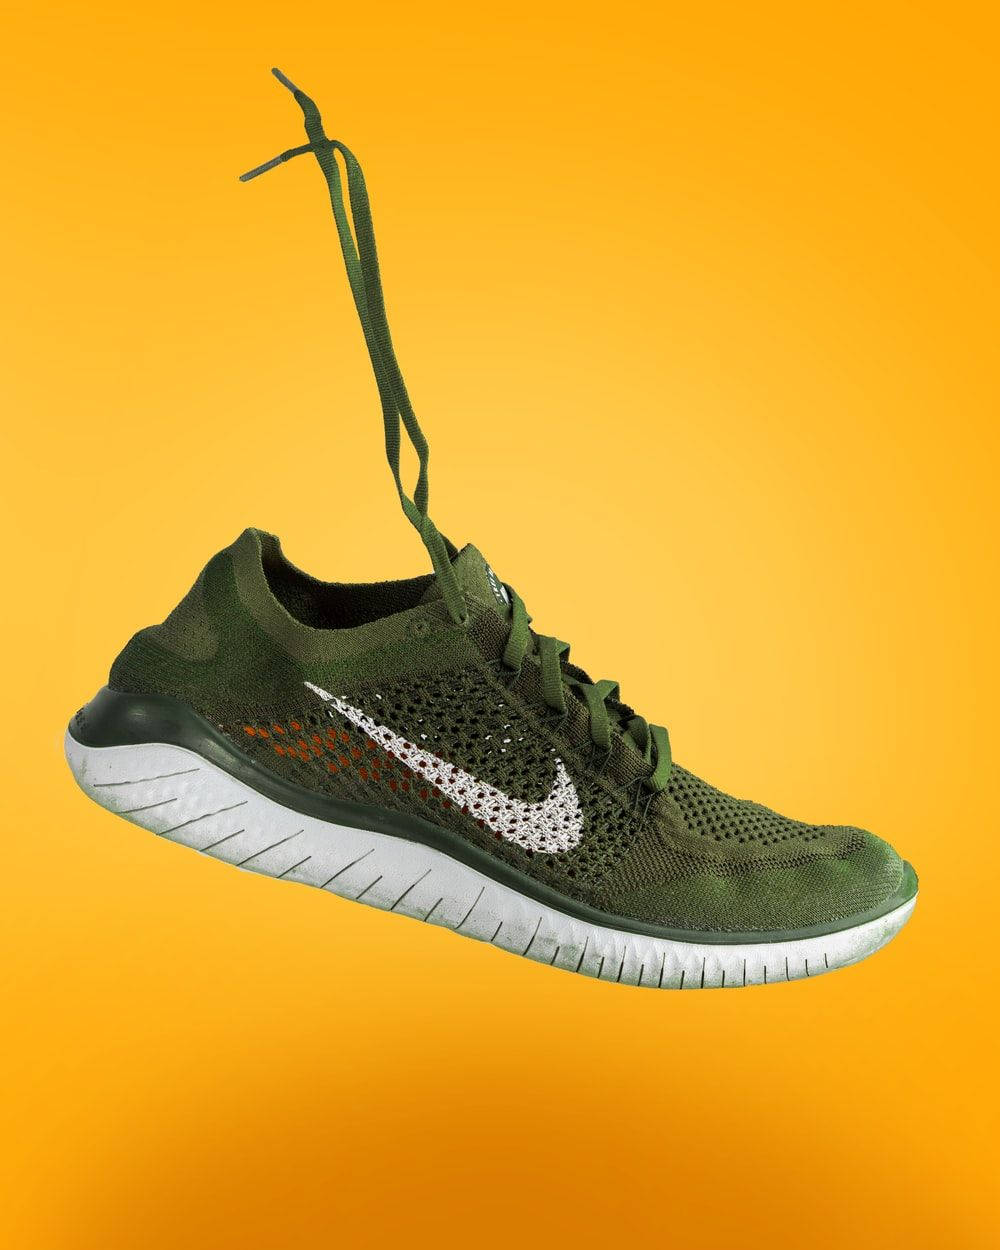 Nike Free Flyknit Running Shoe Wallpaper